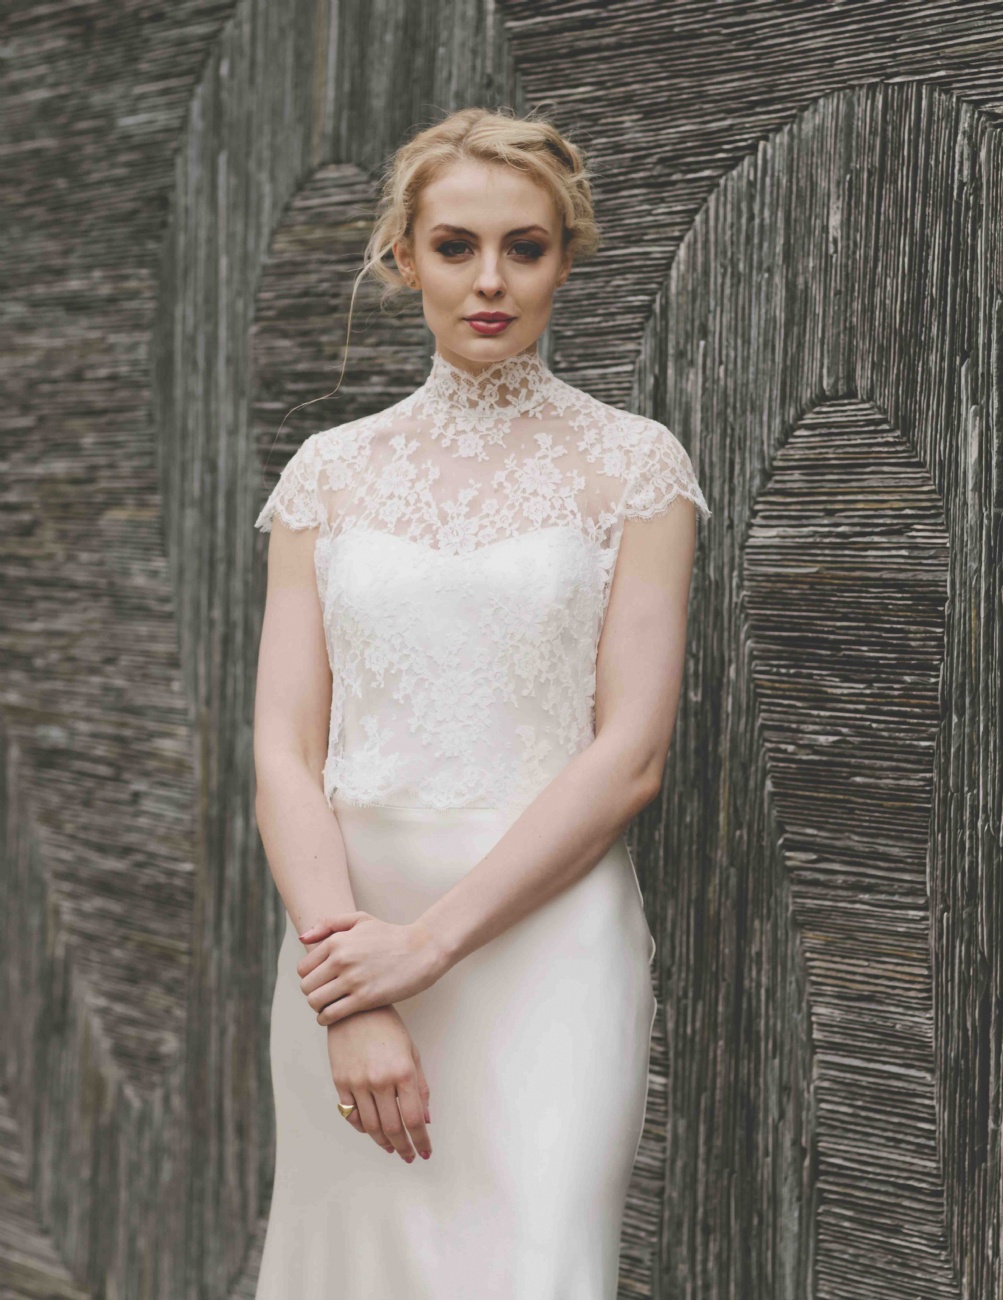 Bridalwear - Emma Victoria Payne